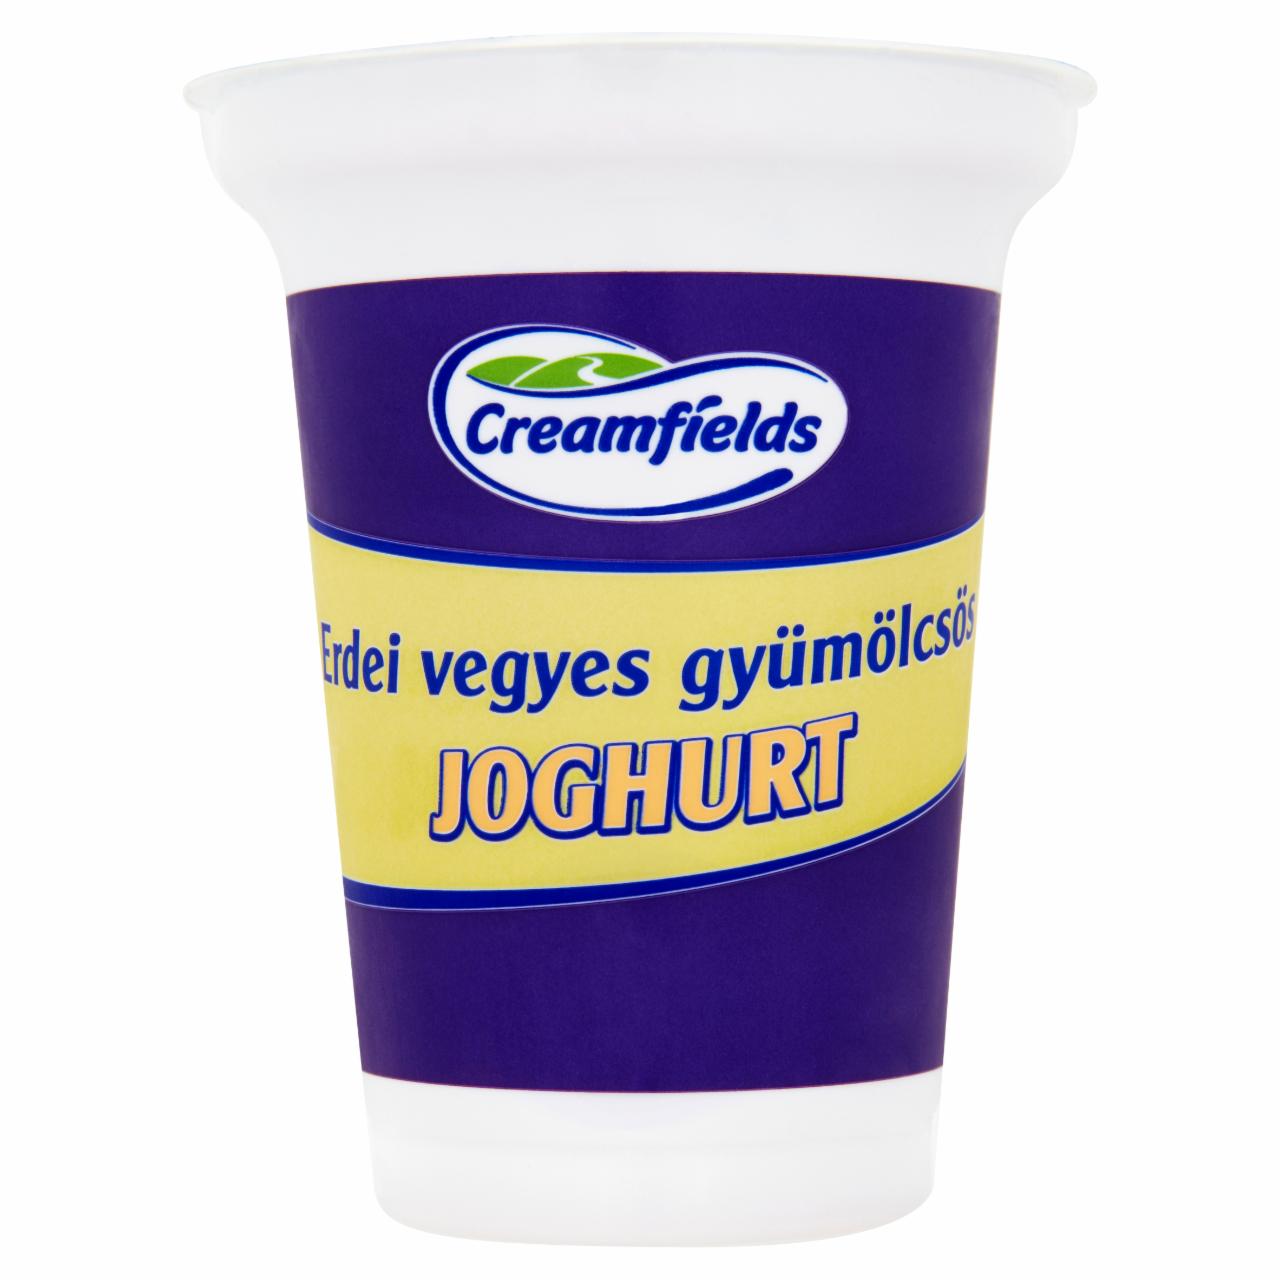 Képek - Creamfields zsírszegény, élőflórás, erdei vegyes gyümölcsös joghurt 375 g